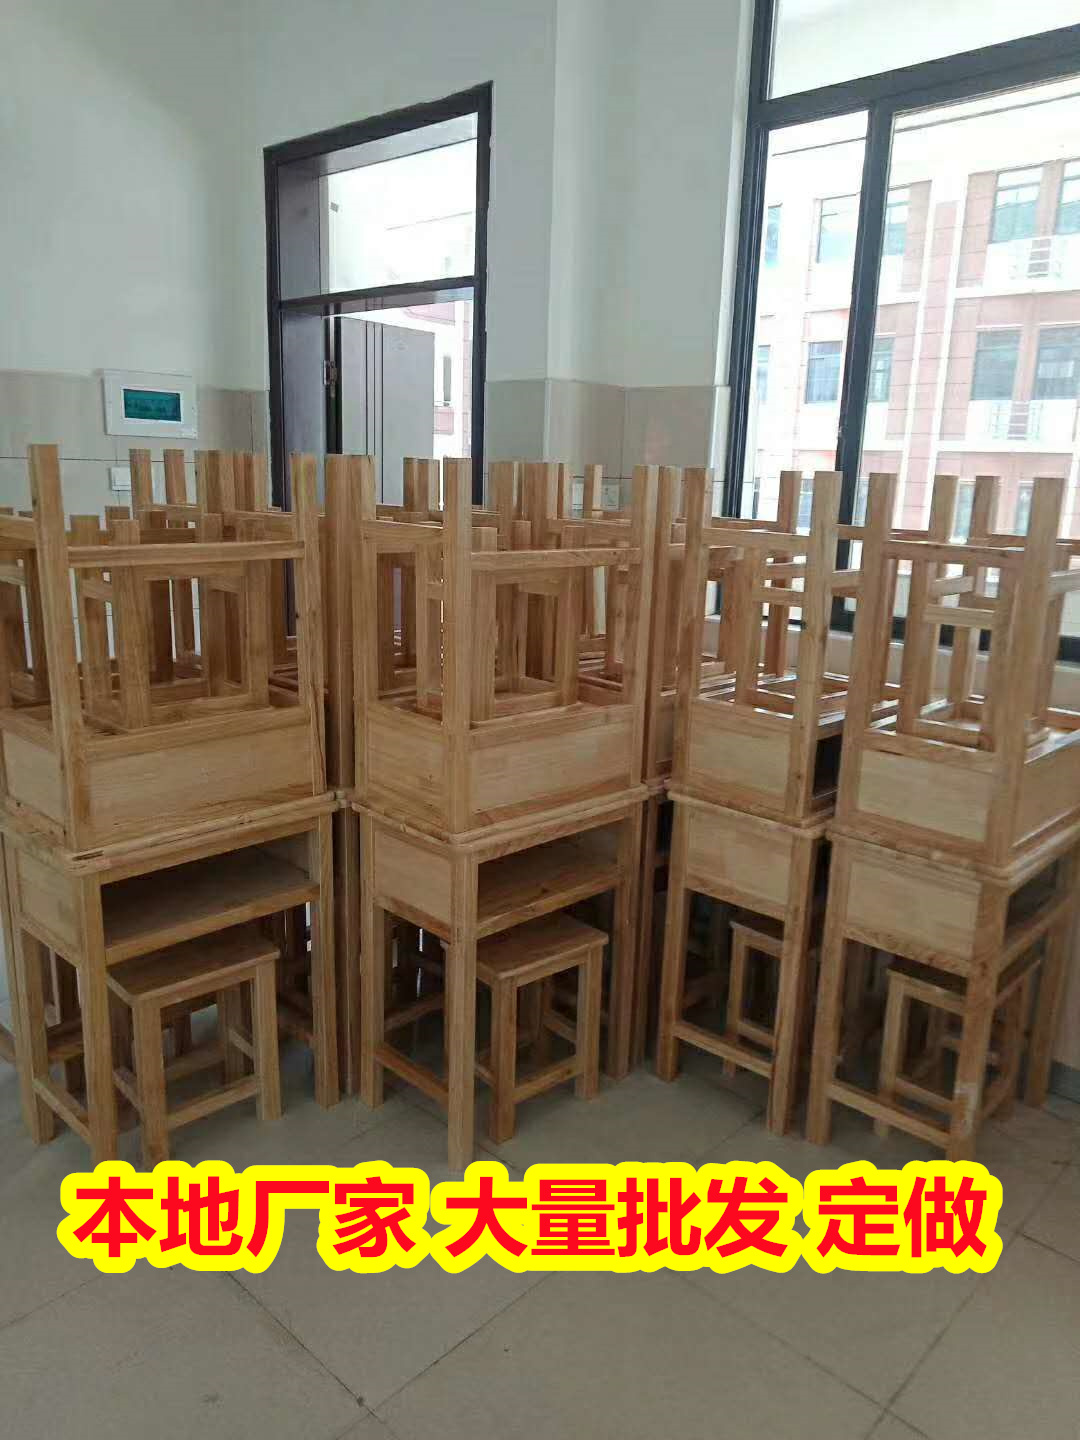 批发供应南宁邕宁课桌椅供应商,橡木课桌椅